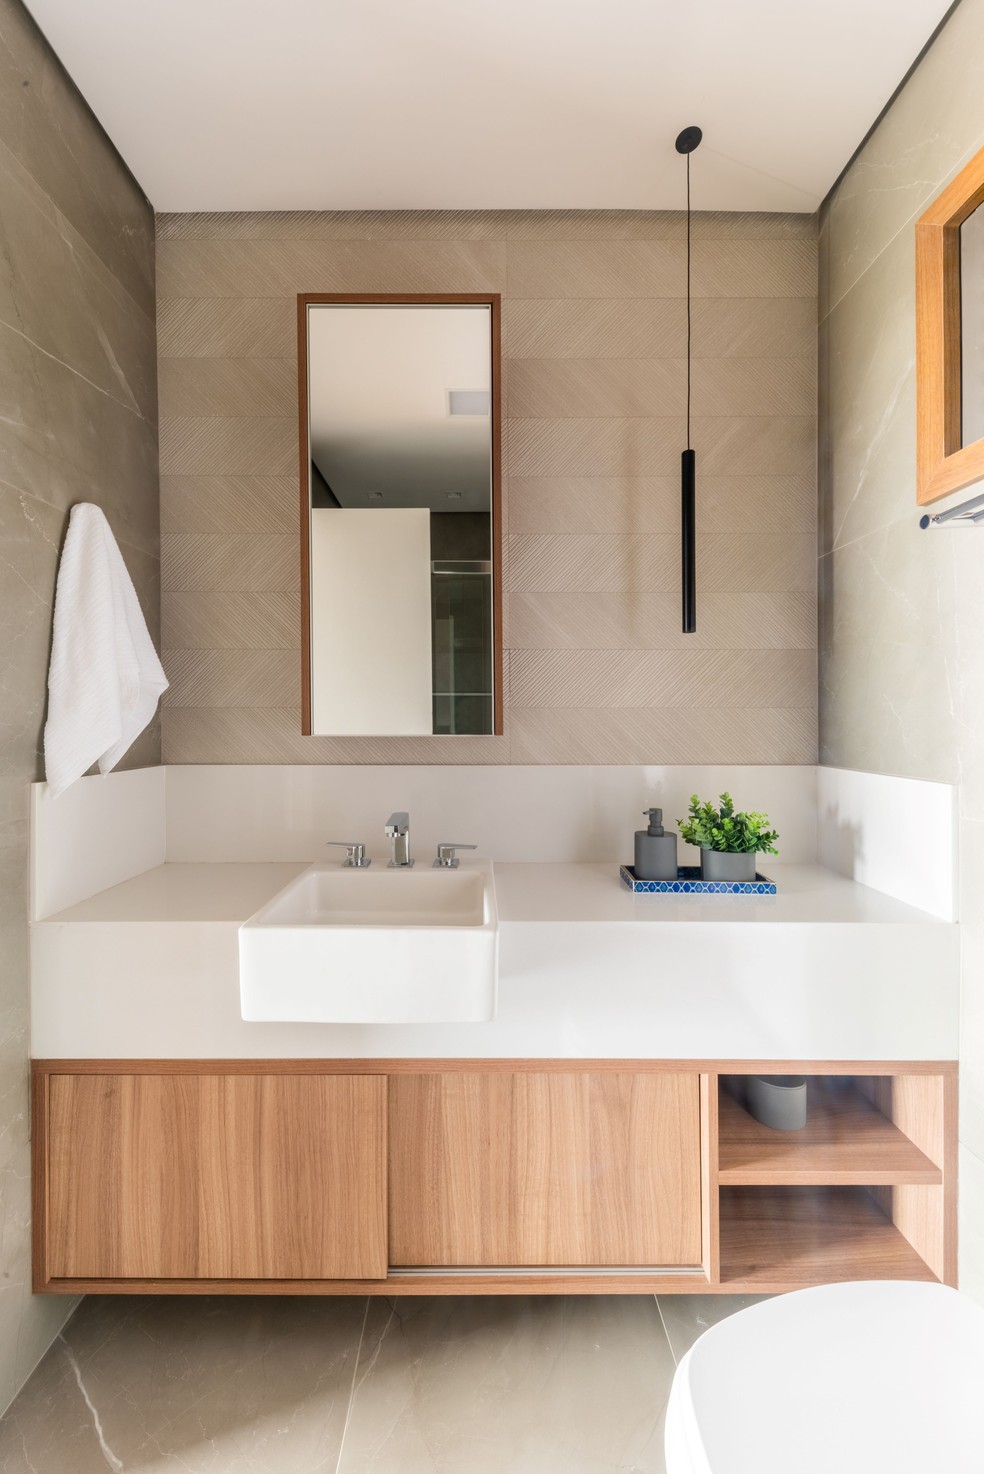 DÚPLEX DE RAFAEL: No lavabo do irmão, os acabamentos mais neutros, com tonalidades off-white e aspecto mais clássico — Foto: Guilherme Pucci